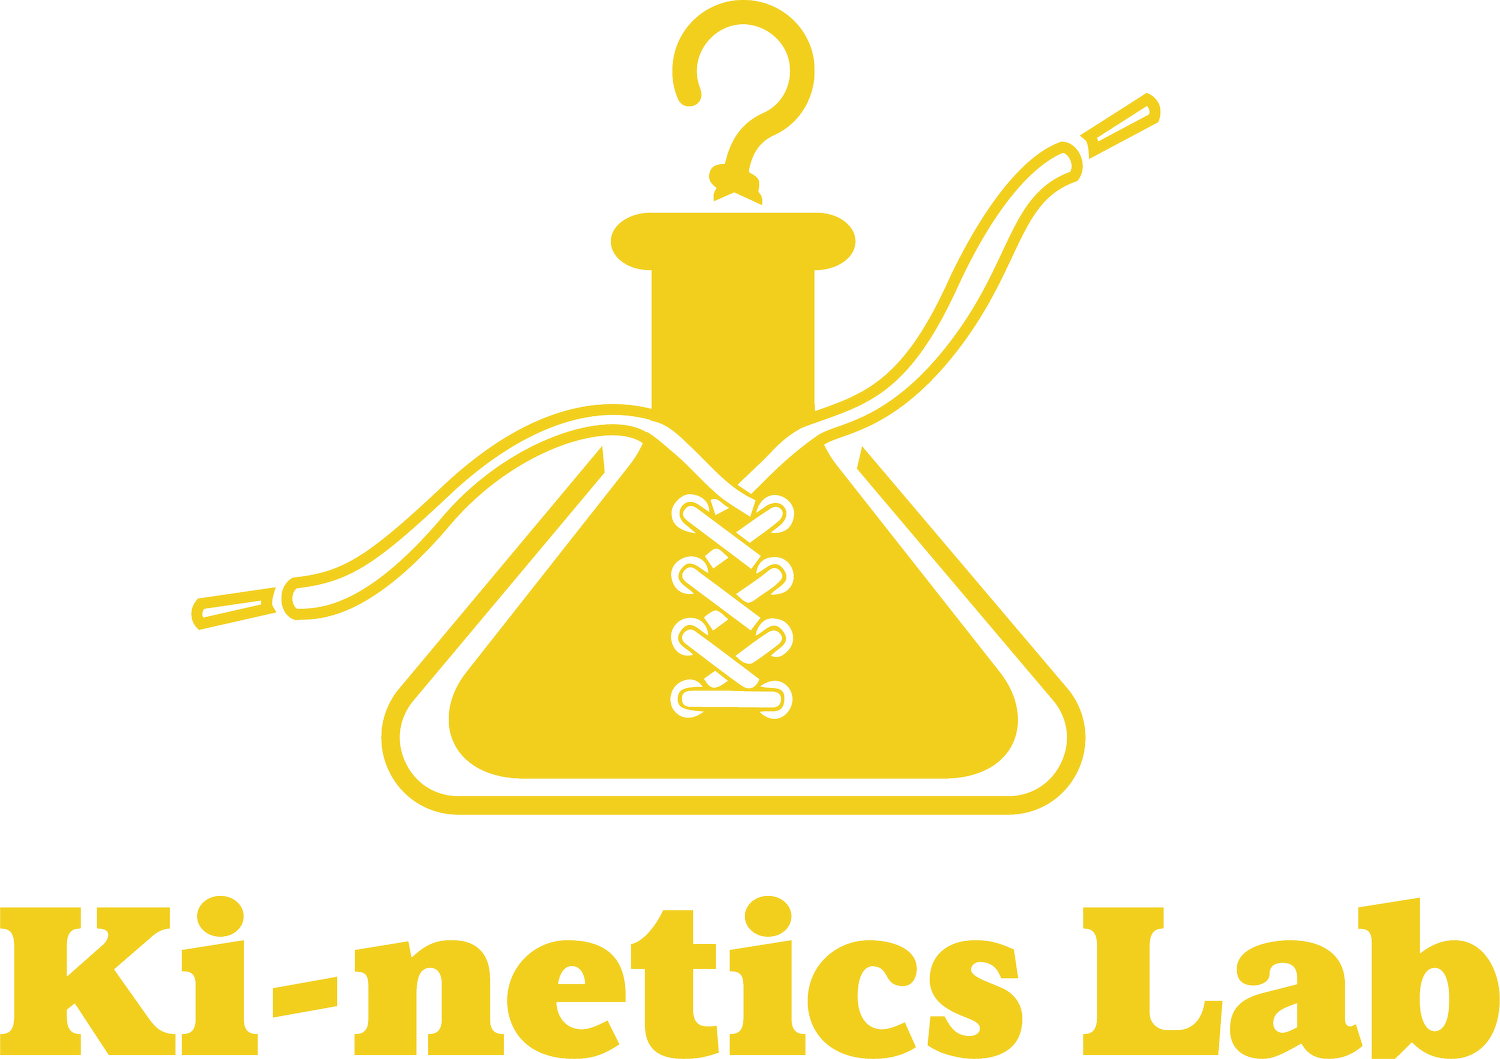 Ki-netics Lab